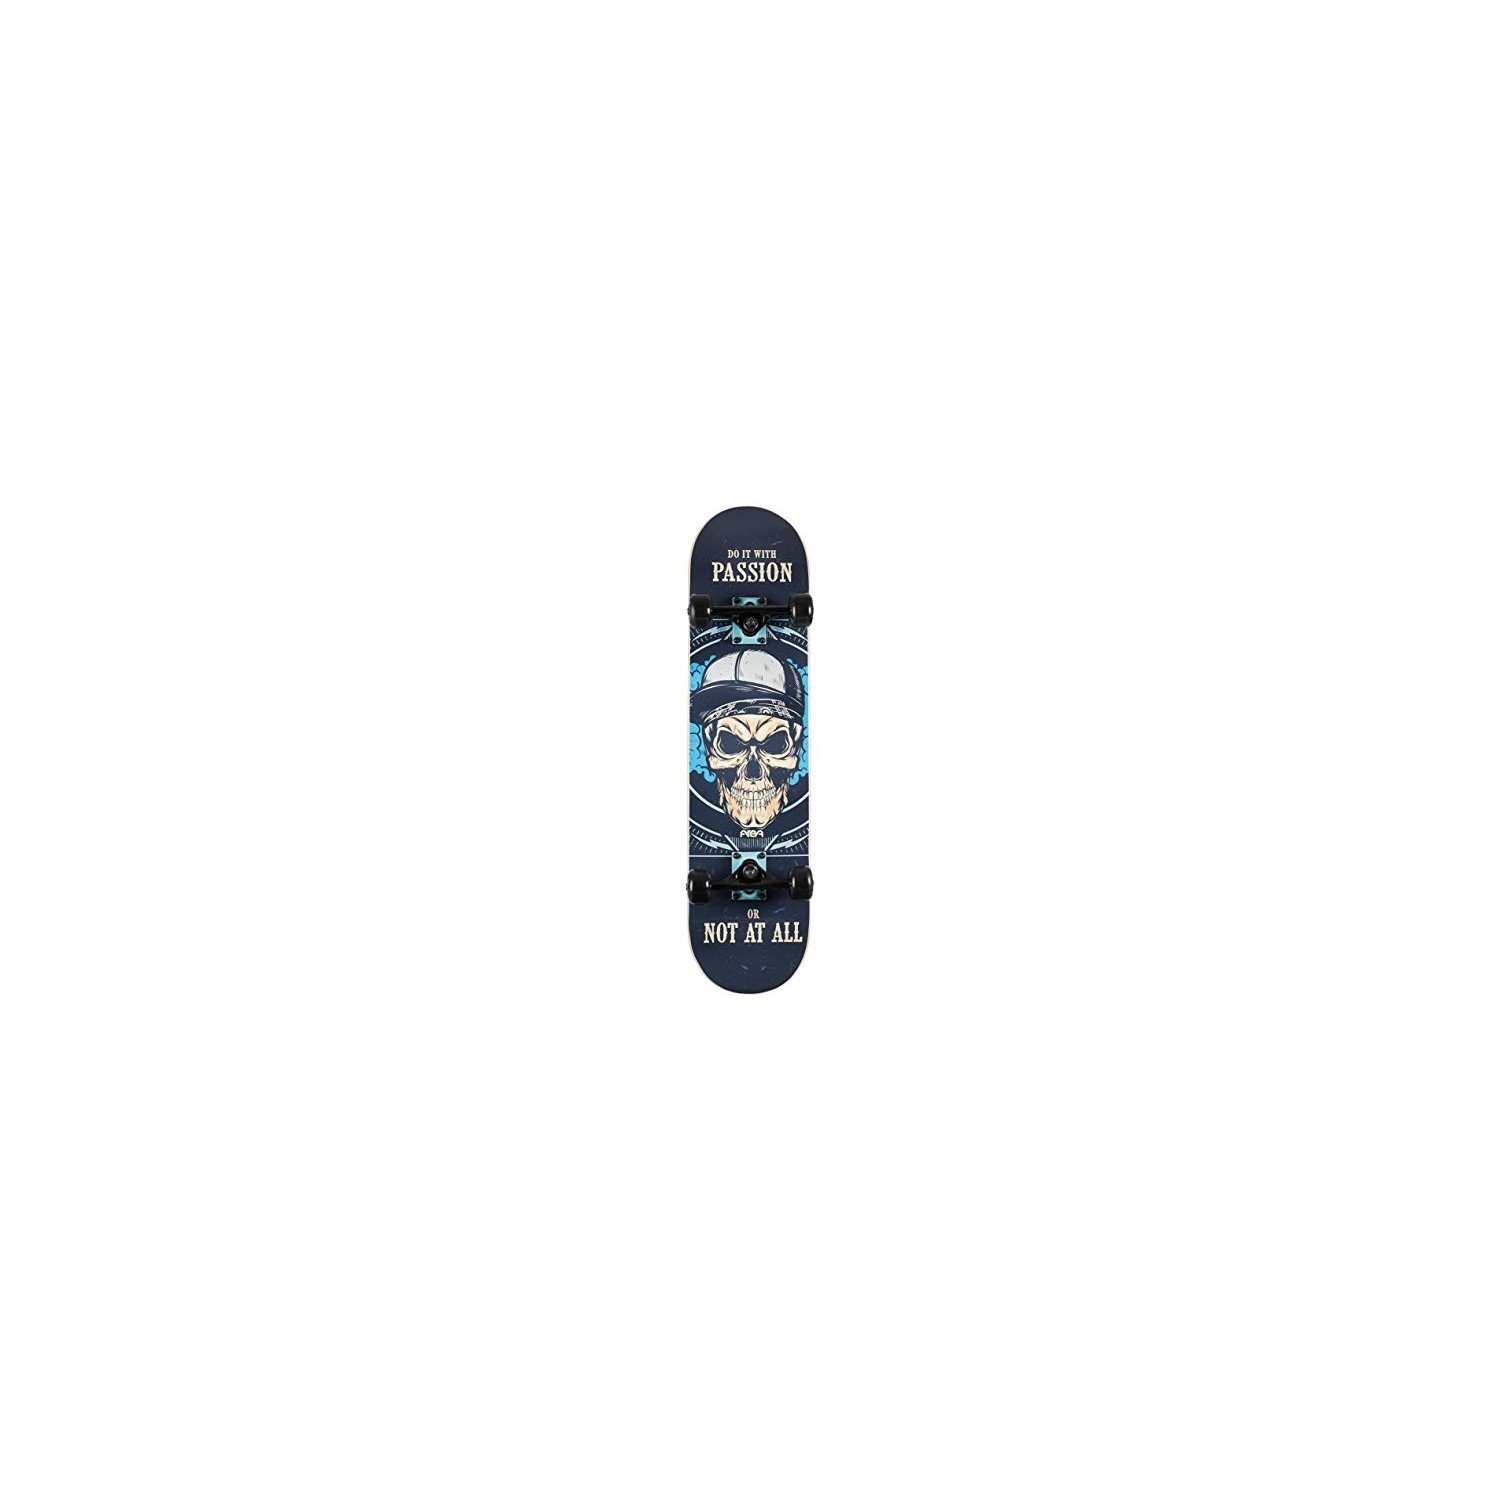 AREA17 Skateboard Skateboard Skateboard Passion - 000 - / - | Skateboards